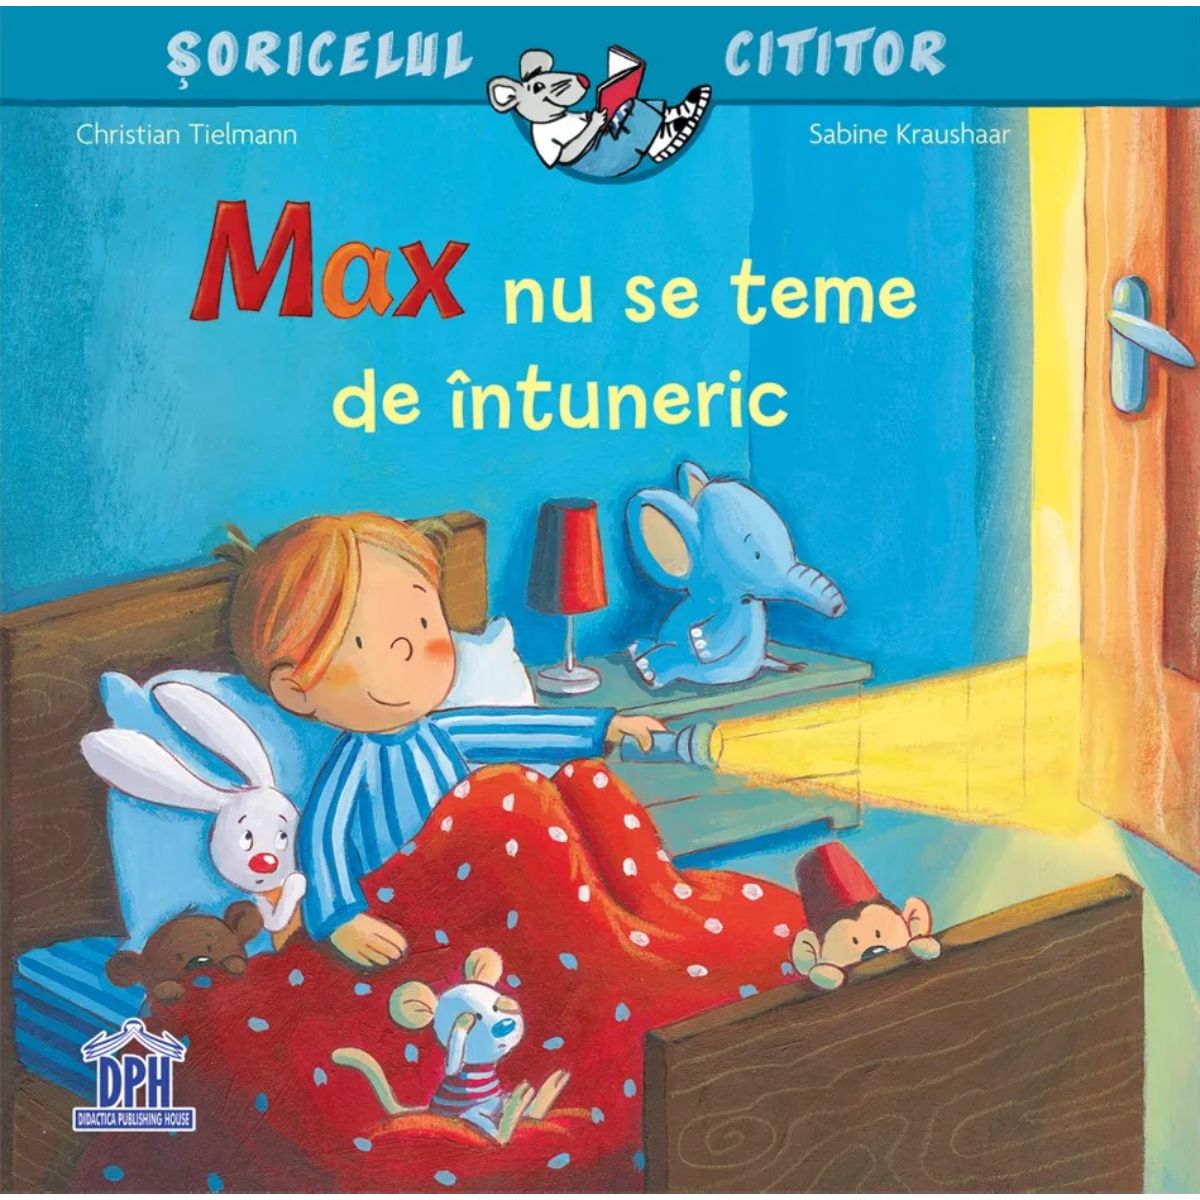 Soricelul cititor, Max nu se teme de intuneric